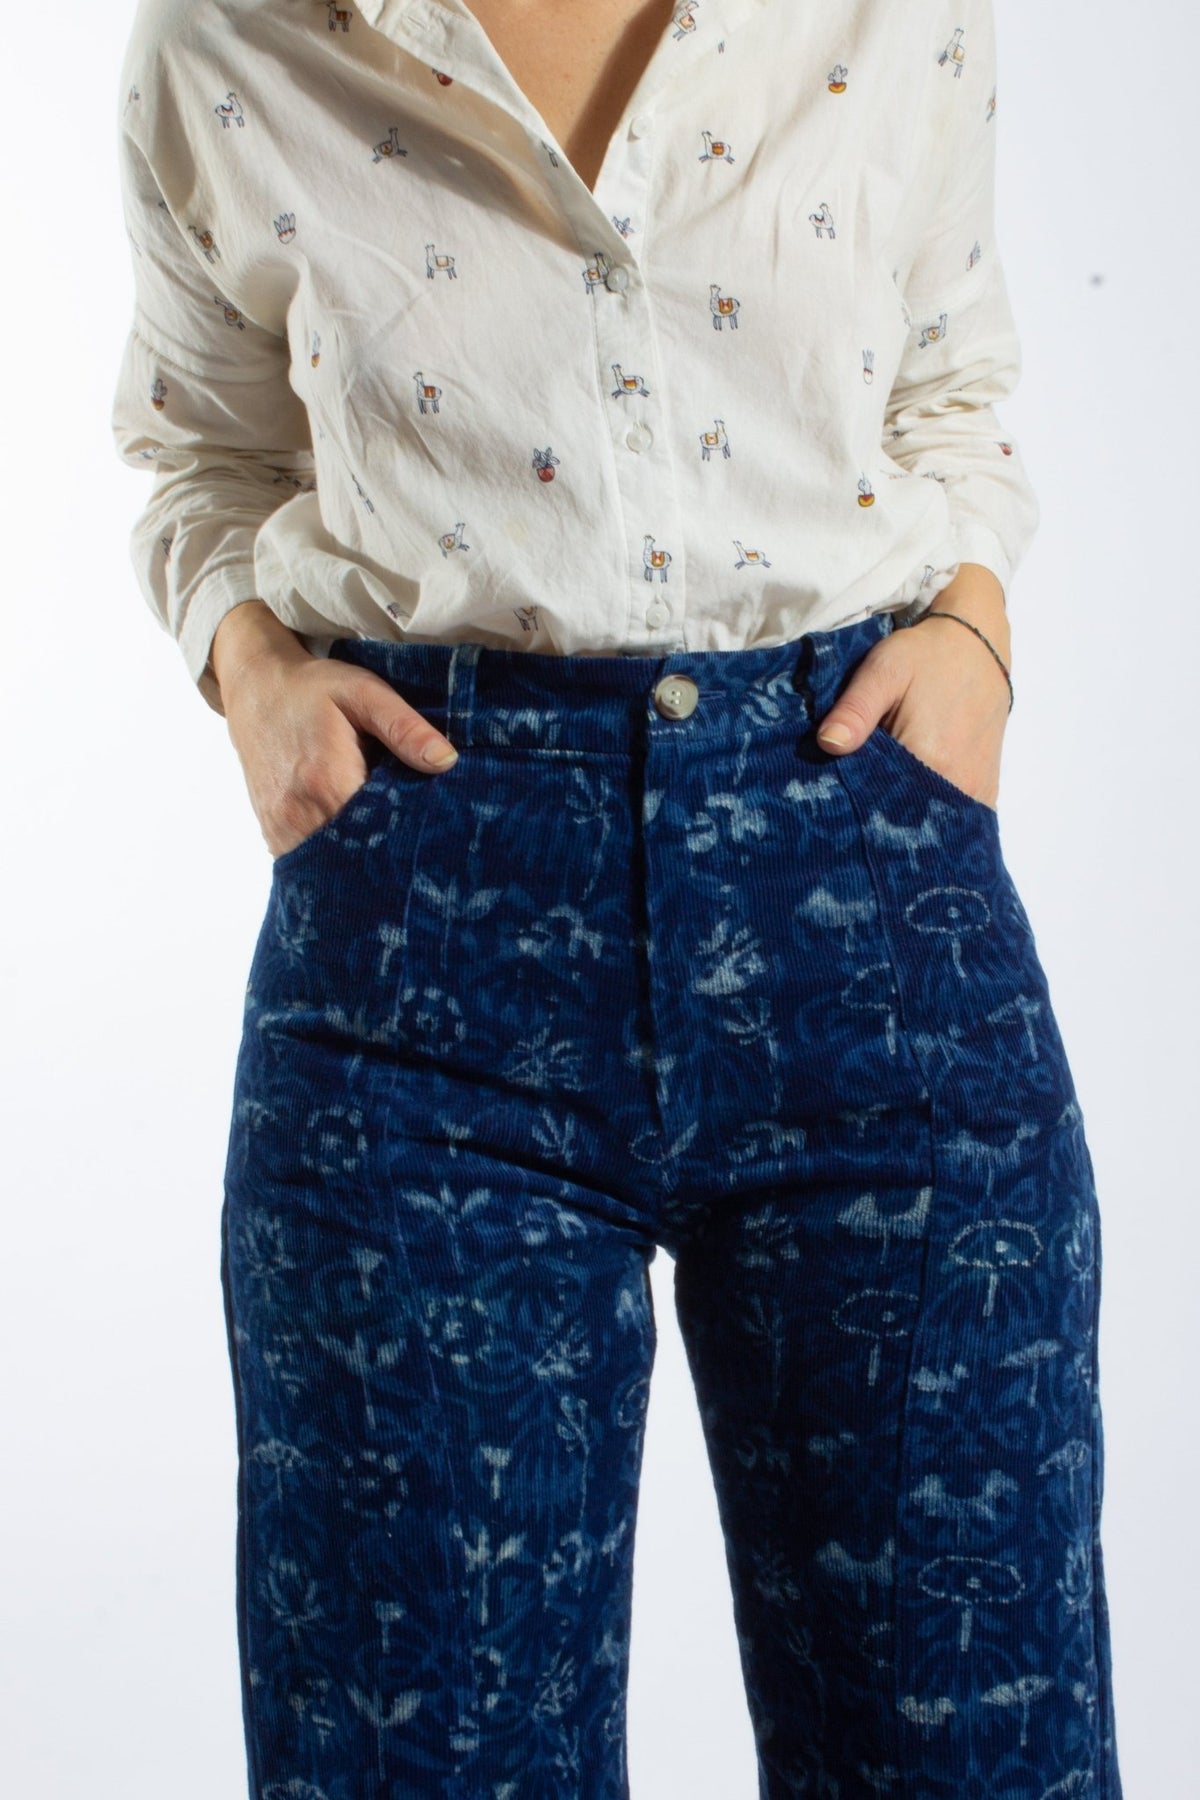 Pantalon GWALIOR - imprimé Nebula - Velours côtelé coton bio & chanvre - Pantalons - Azaadi, la mode responsable accessible